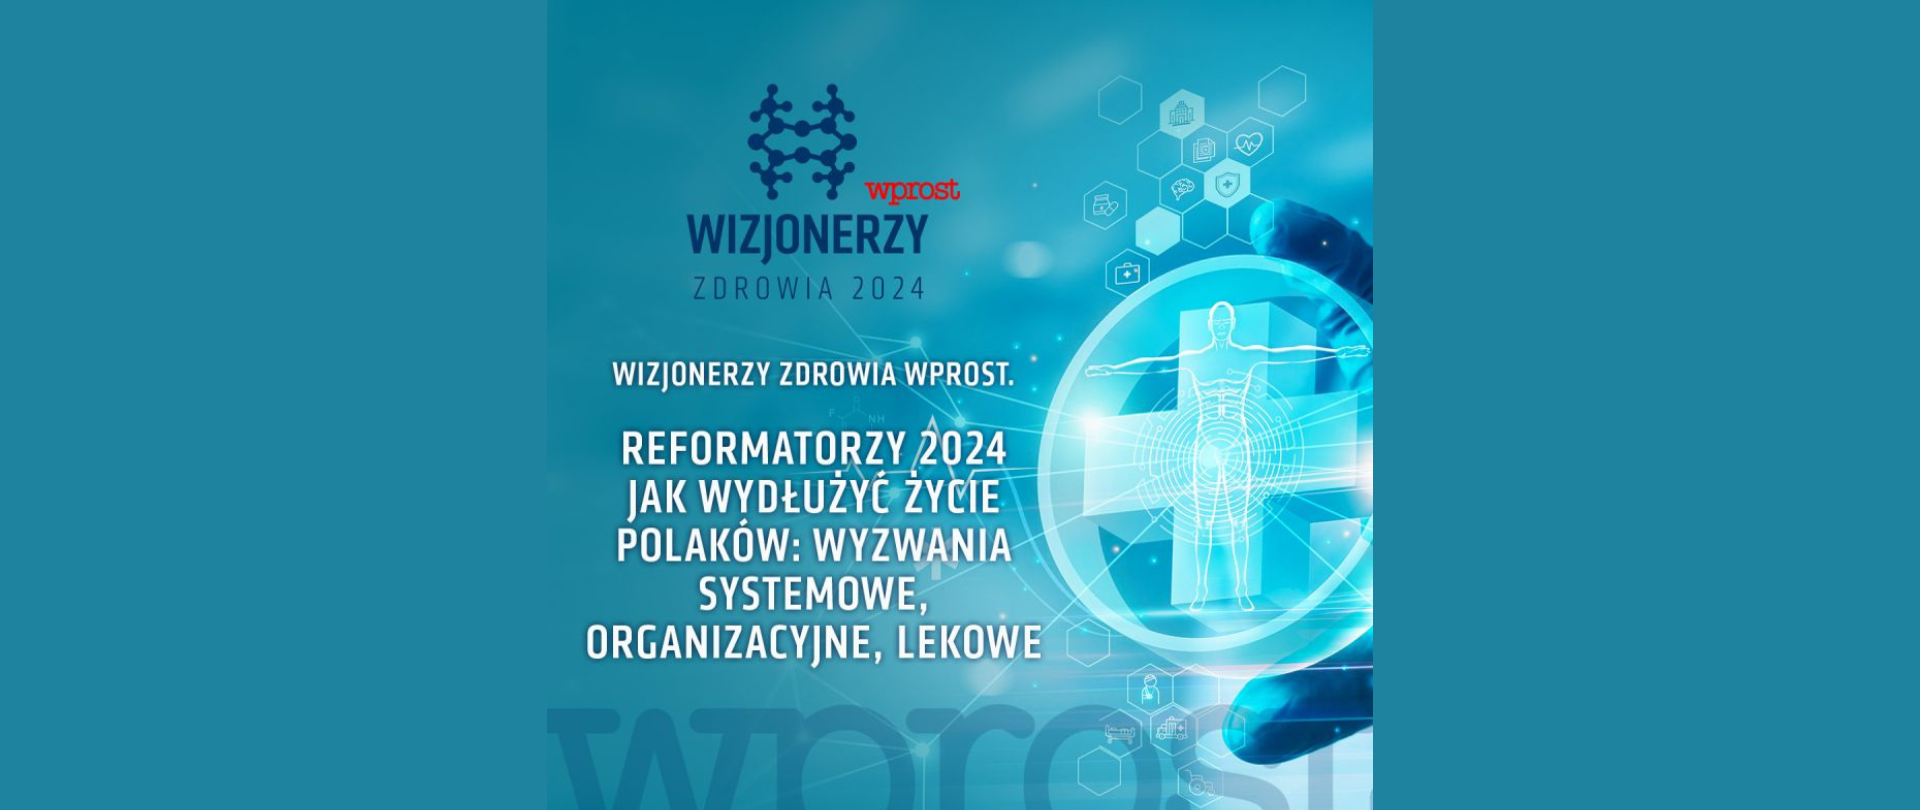 Baner wizjonerzy zdrowia wprost. Reformatorzy 2024 jak wydłużyć życie Polaków: wyzwania systemowe, organizacyjne, lekowe.